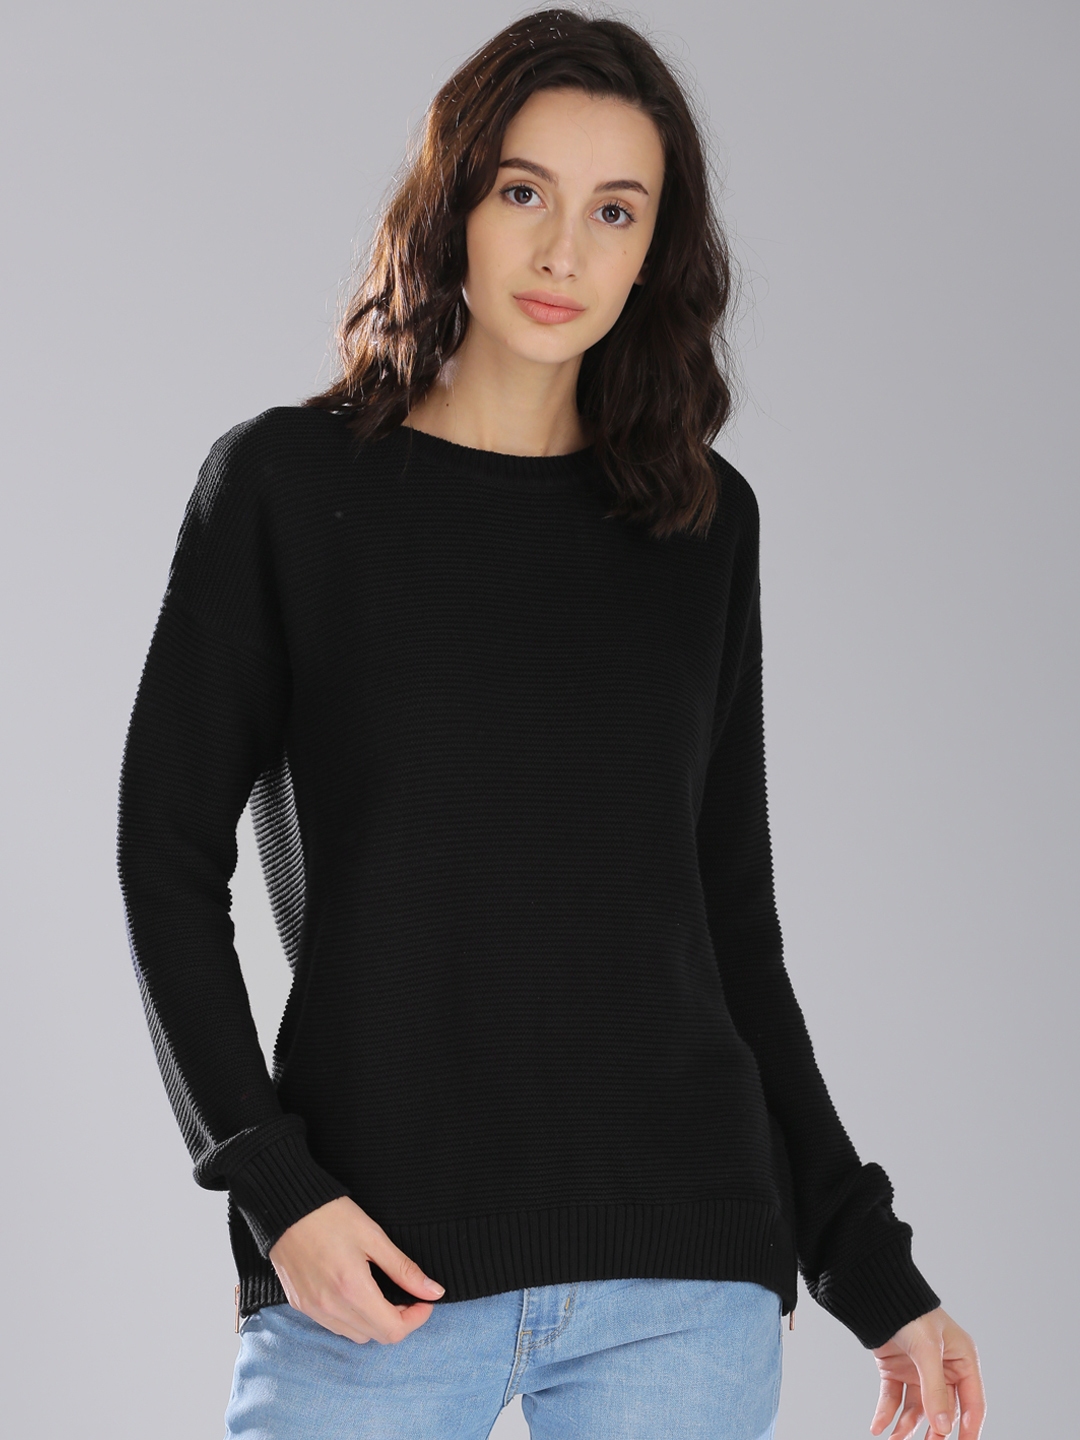 Buy Levis Women Black Self Design Sweater - Sweaters for Women 2190976 ...